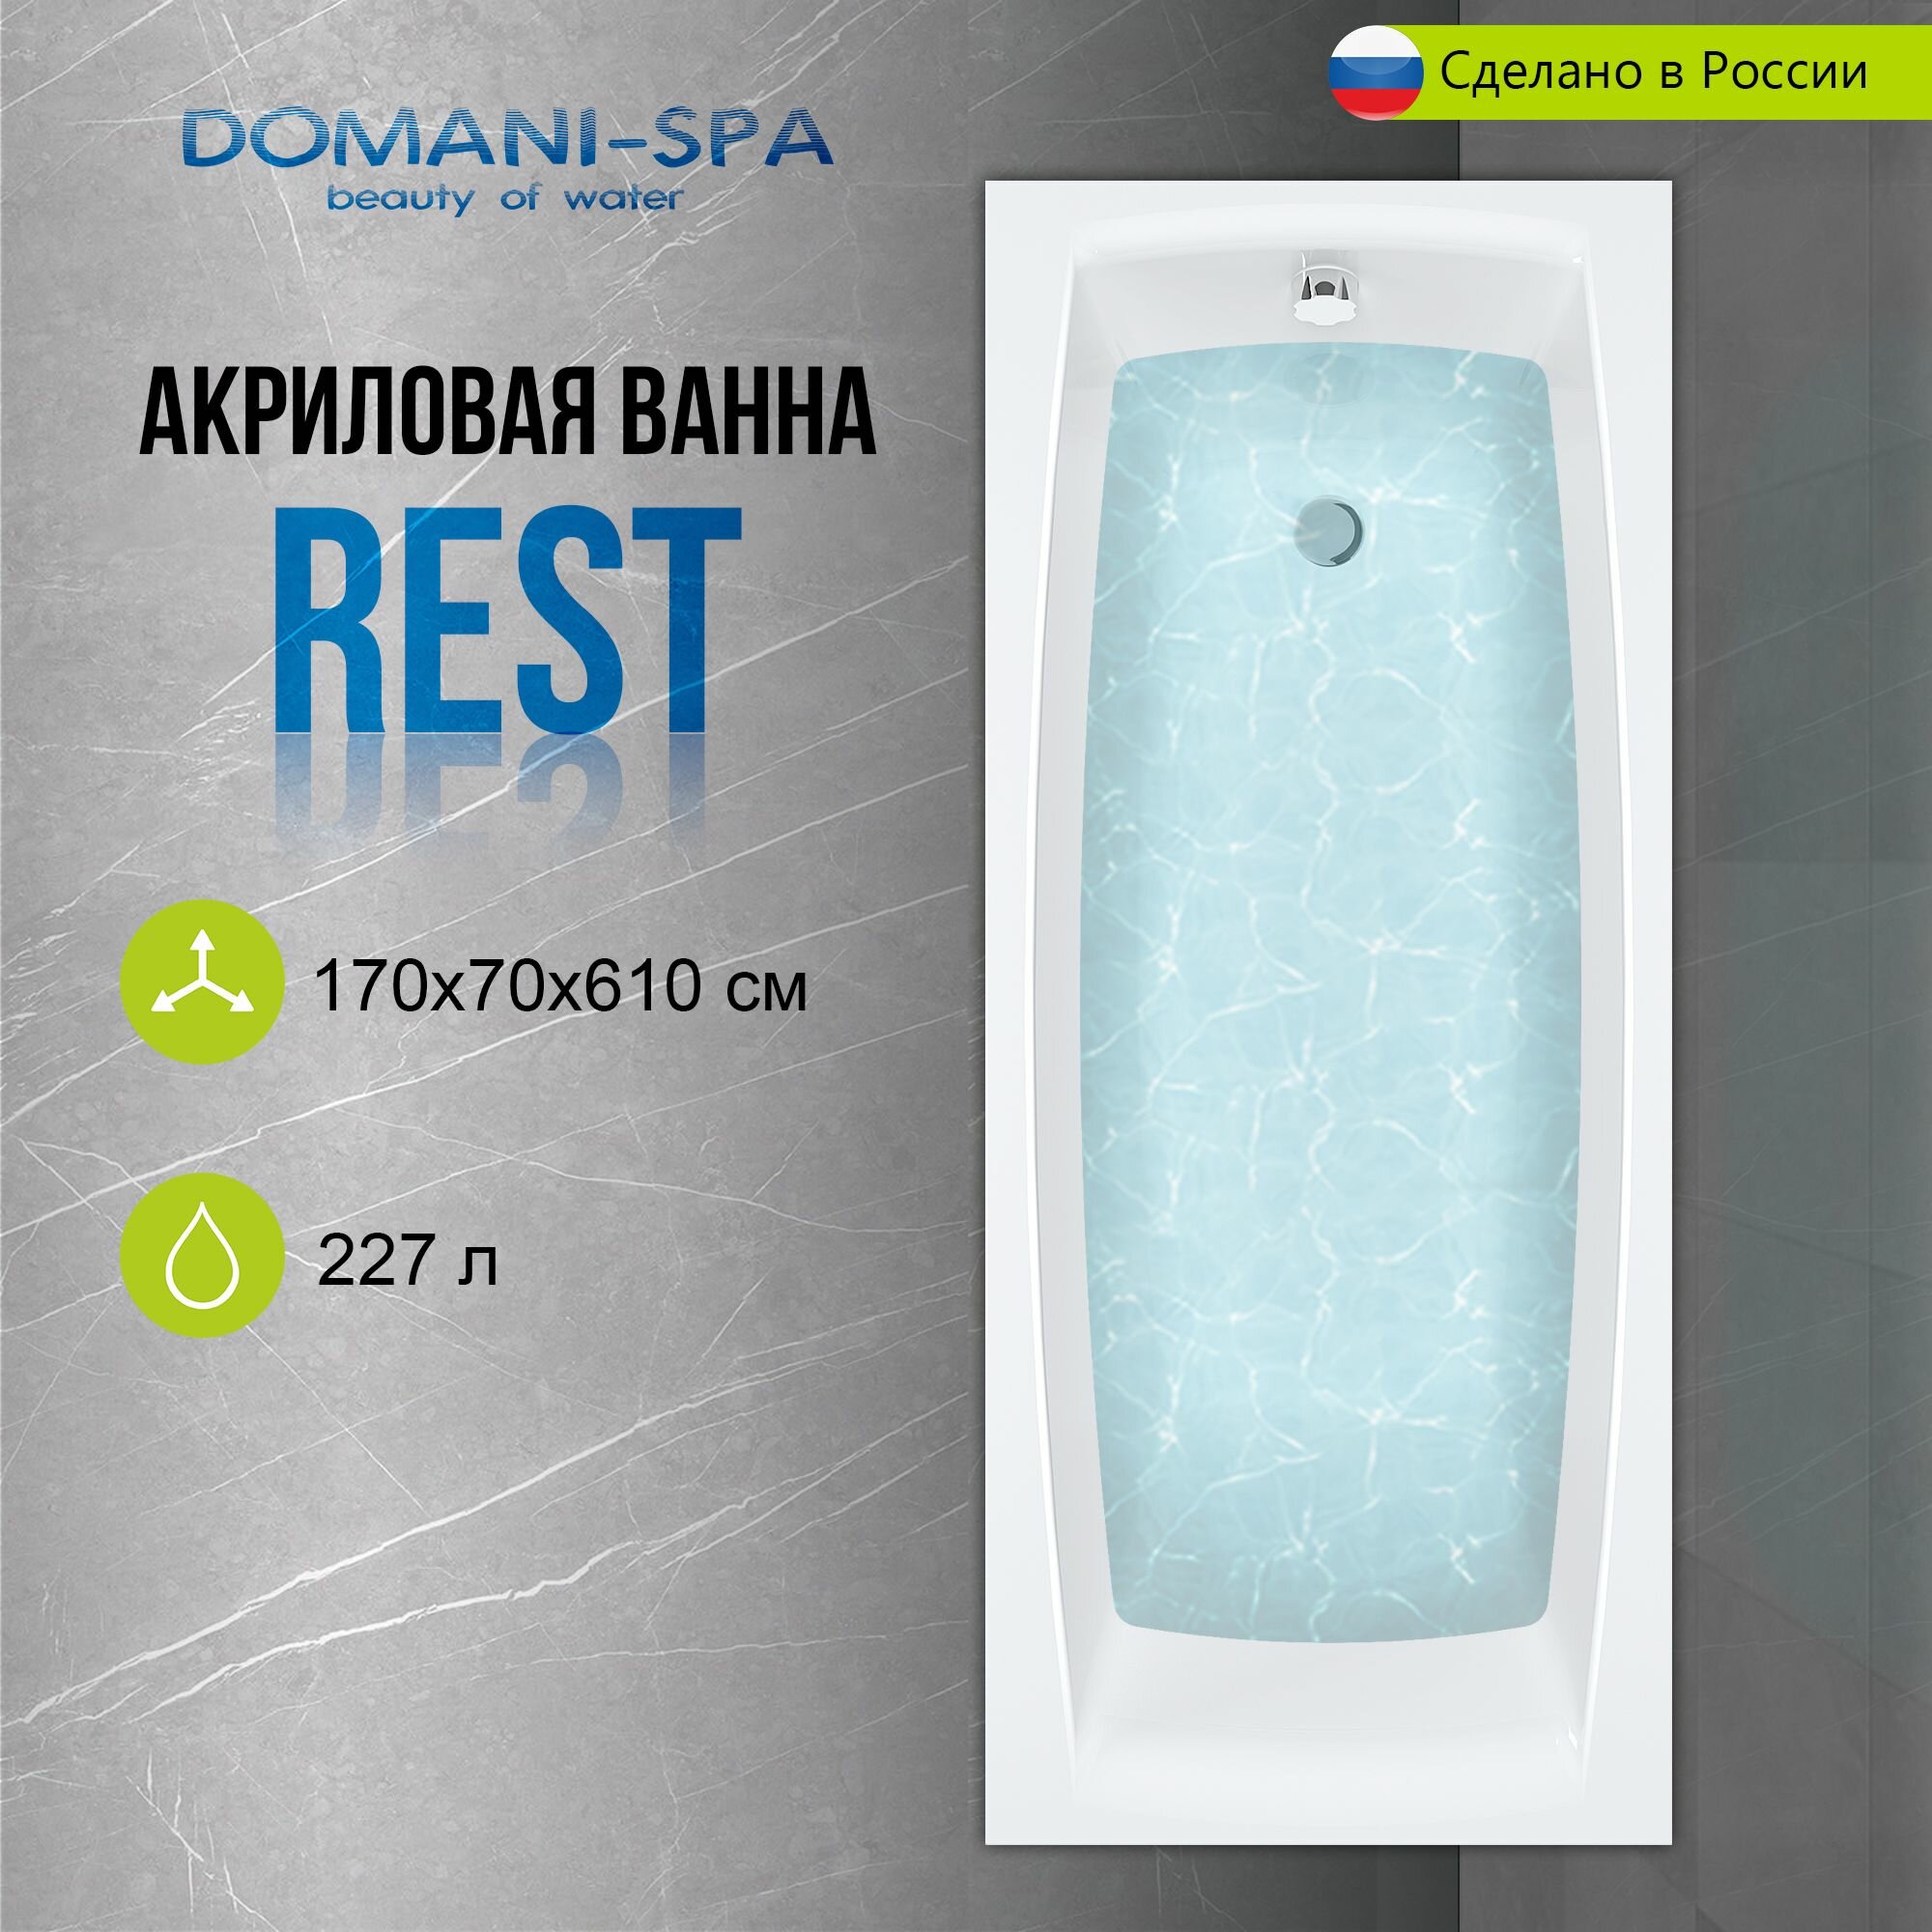 Ванна акриловая Domani-Spa Rest 170х70 пристенная, с каркасом и лицевым экраном в комплекте